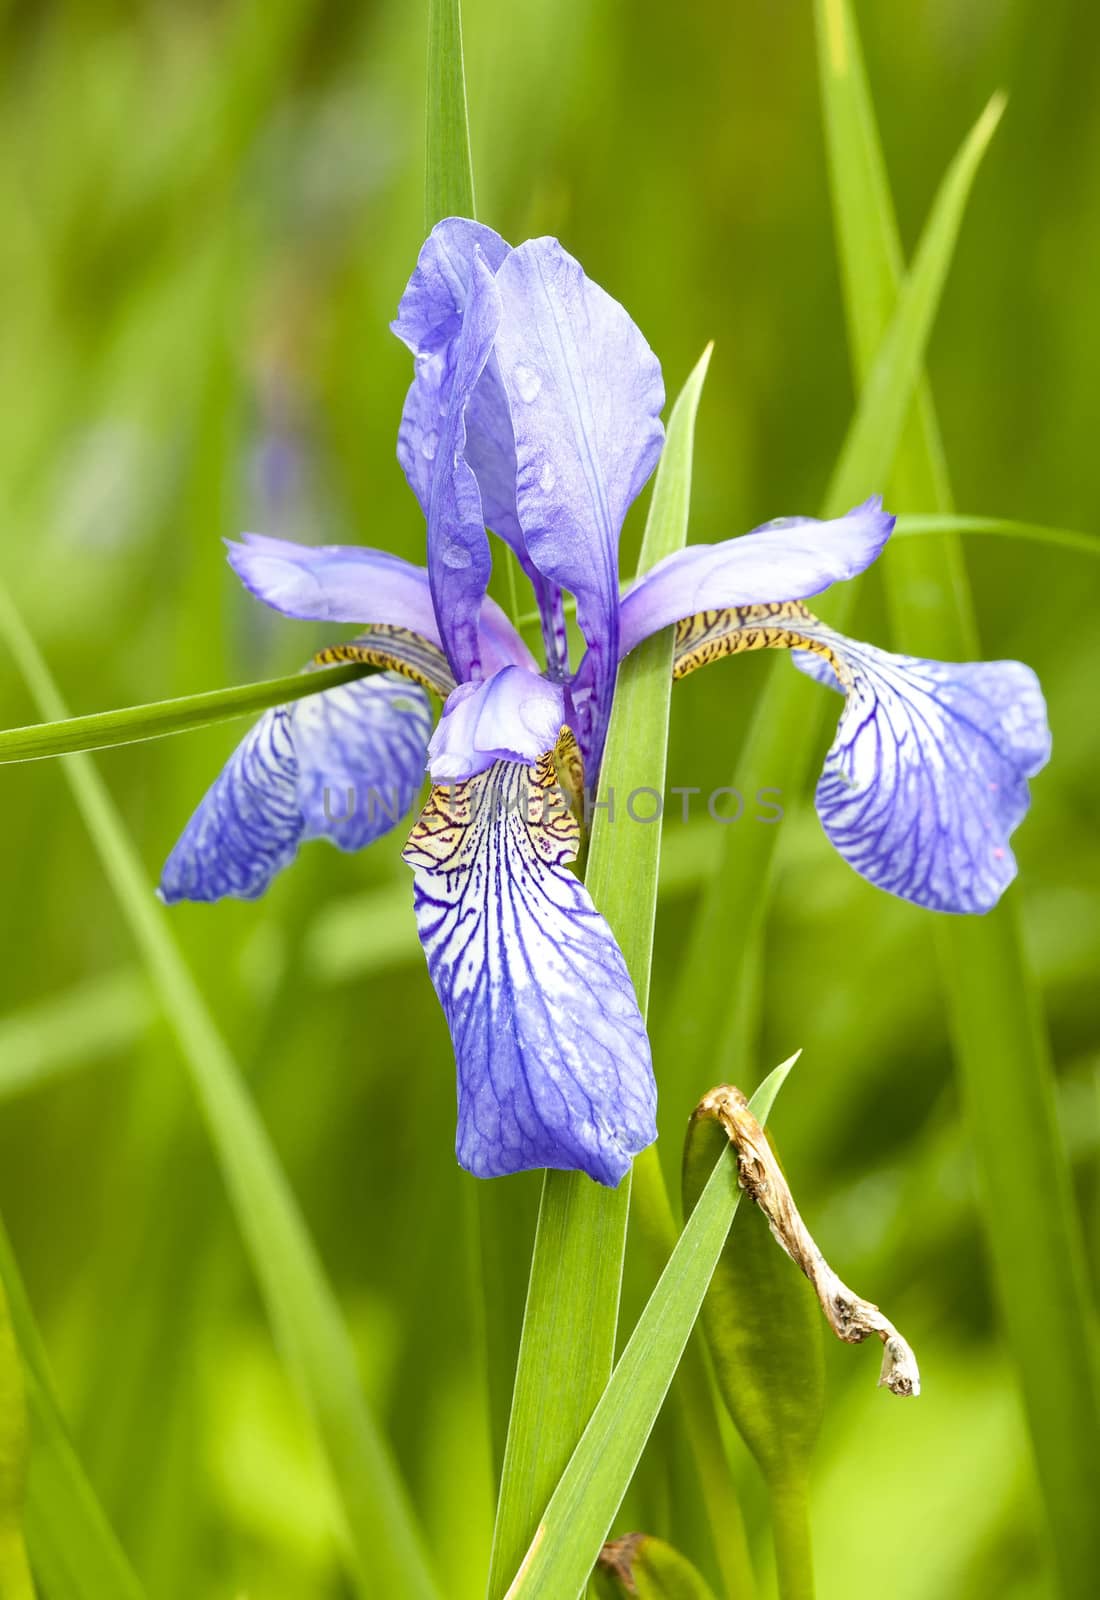 Iris an early flowering spring summer garden perennial plant